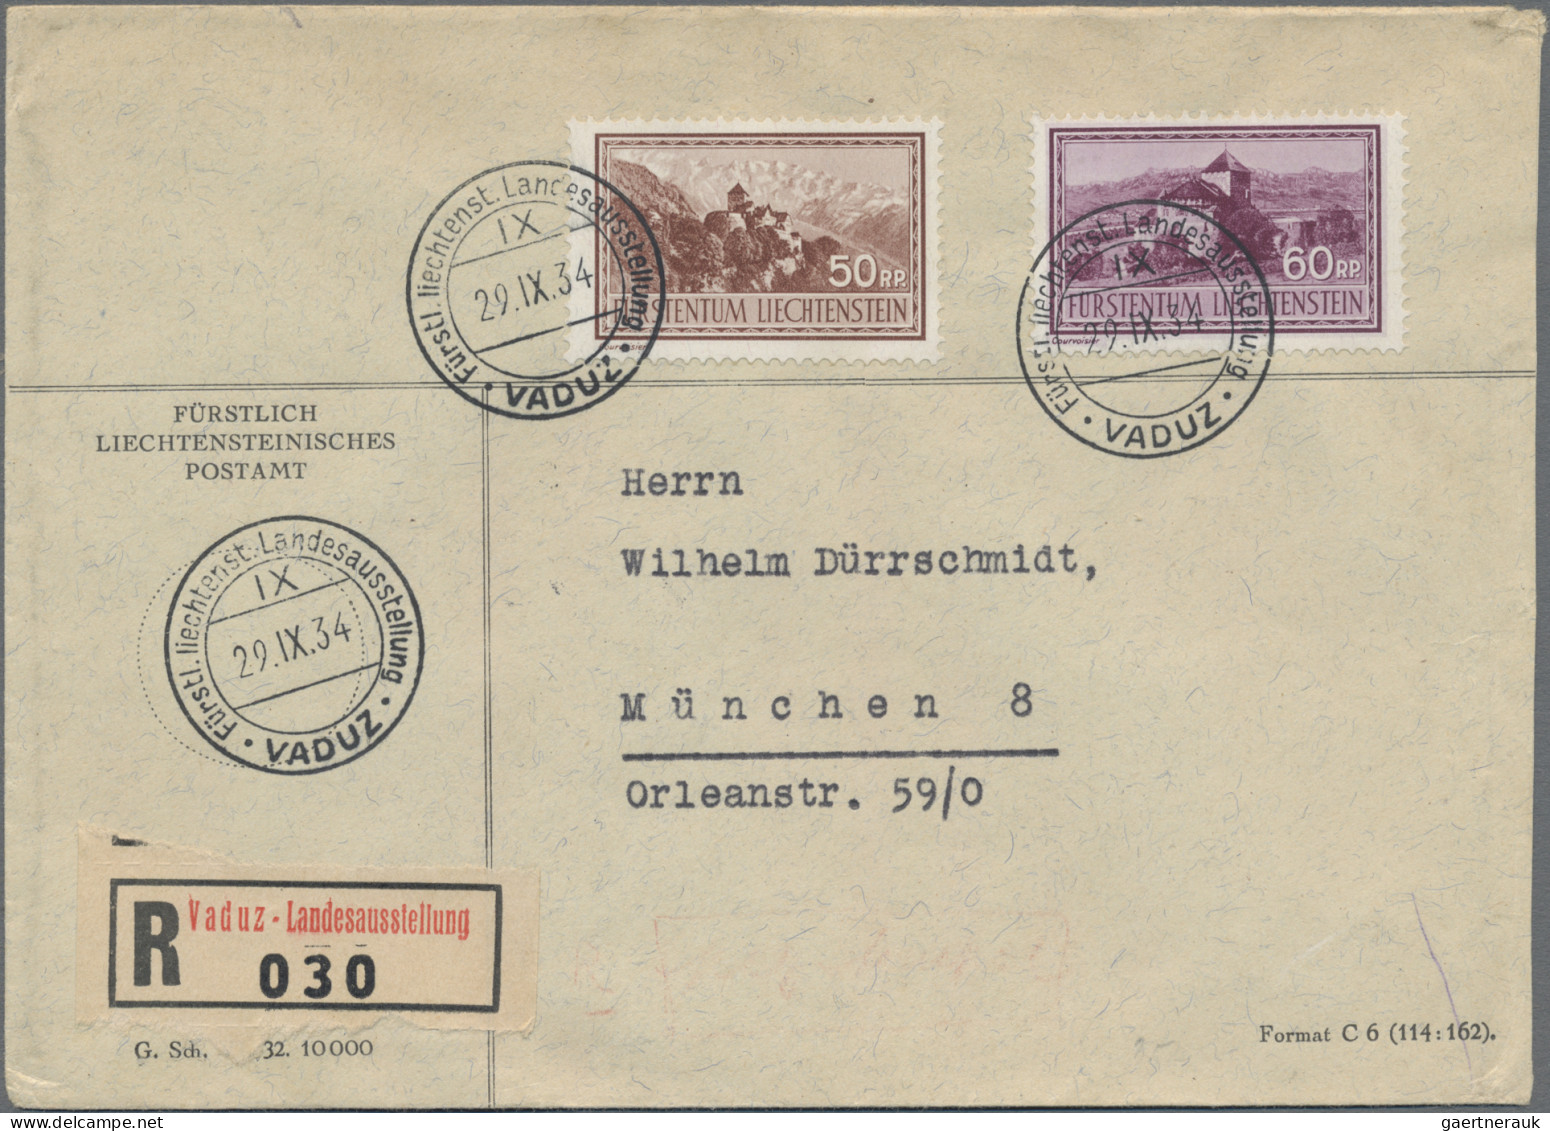 Liechtenstein: 1934, LIBA, 6 saubere R-Briefe alle mit LIBA-SST aus 29.9.-3.10.3